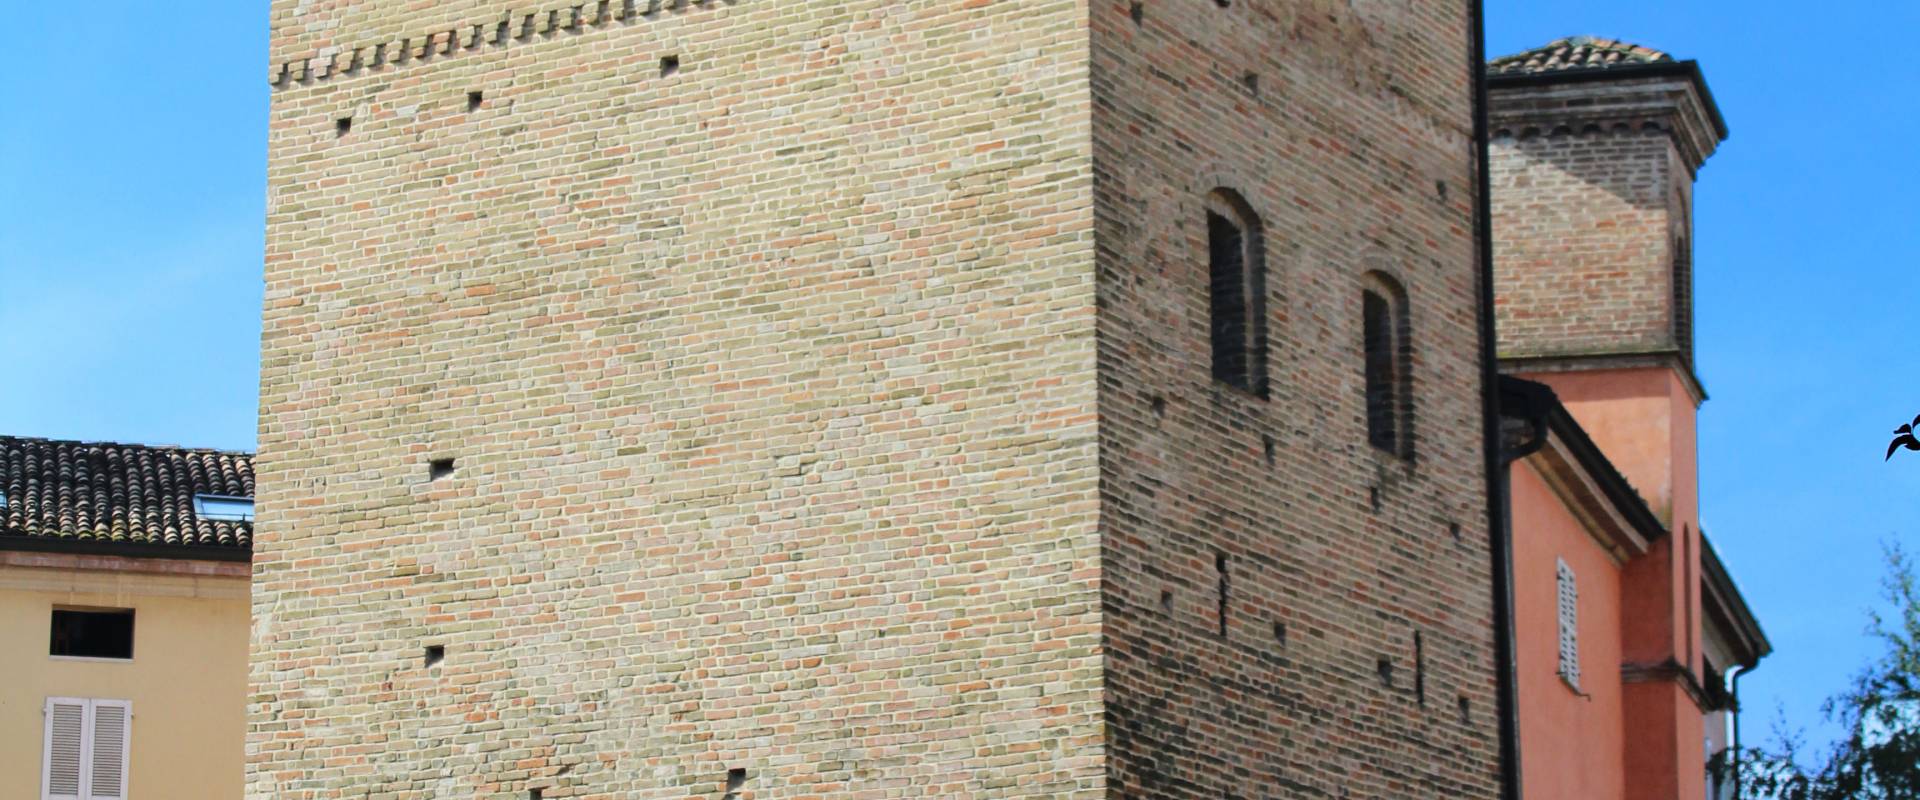 Torre Medievale di Fidenza foto di Chiara Zanacchi